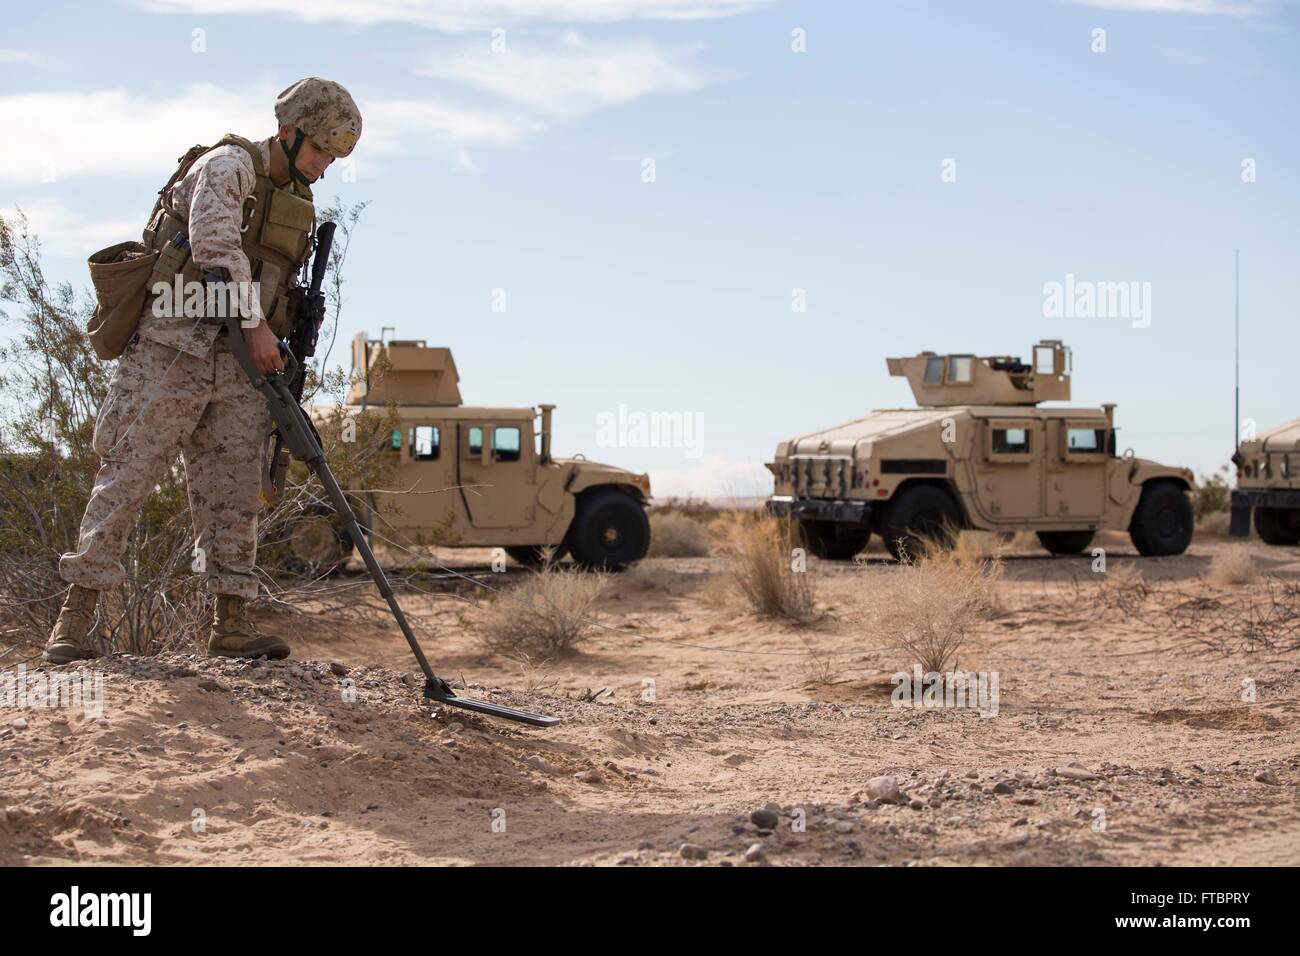 Ein US-Marine Kampfingenieur für fegt improvisierte explosive Vorrichtungen während eines Sicherheit Kraft-Trainings zur Unterstützung der Einsatzvorbereitenden Ausbildung 9. Dezember 2014 auf der Marine Corps Air Station Yuma, Arizona. Stockfoto